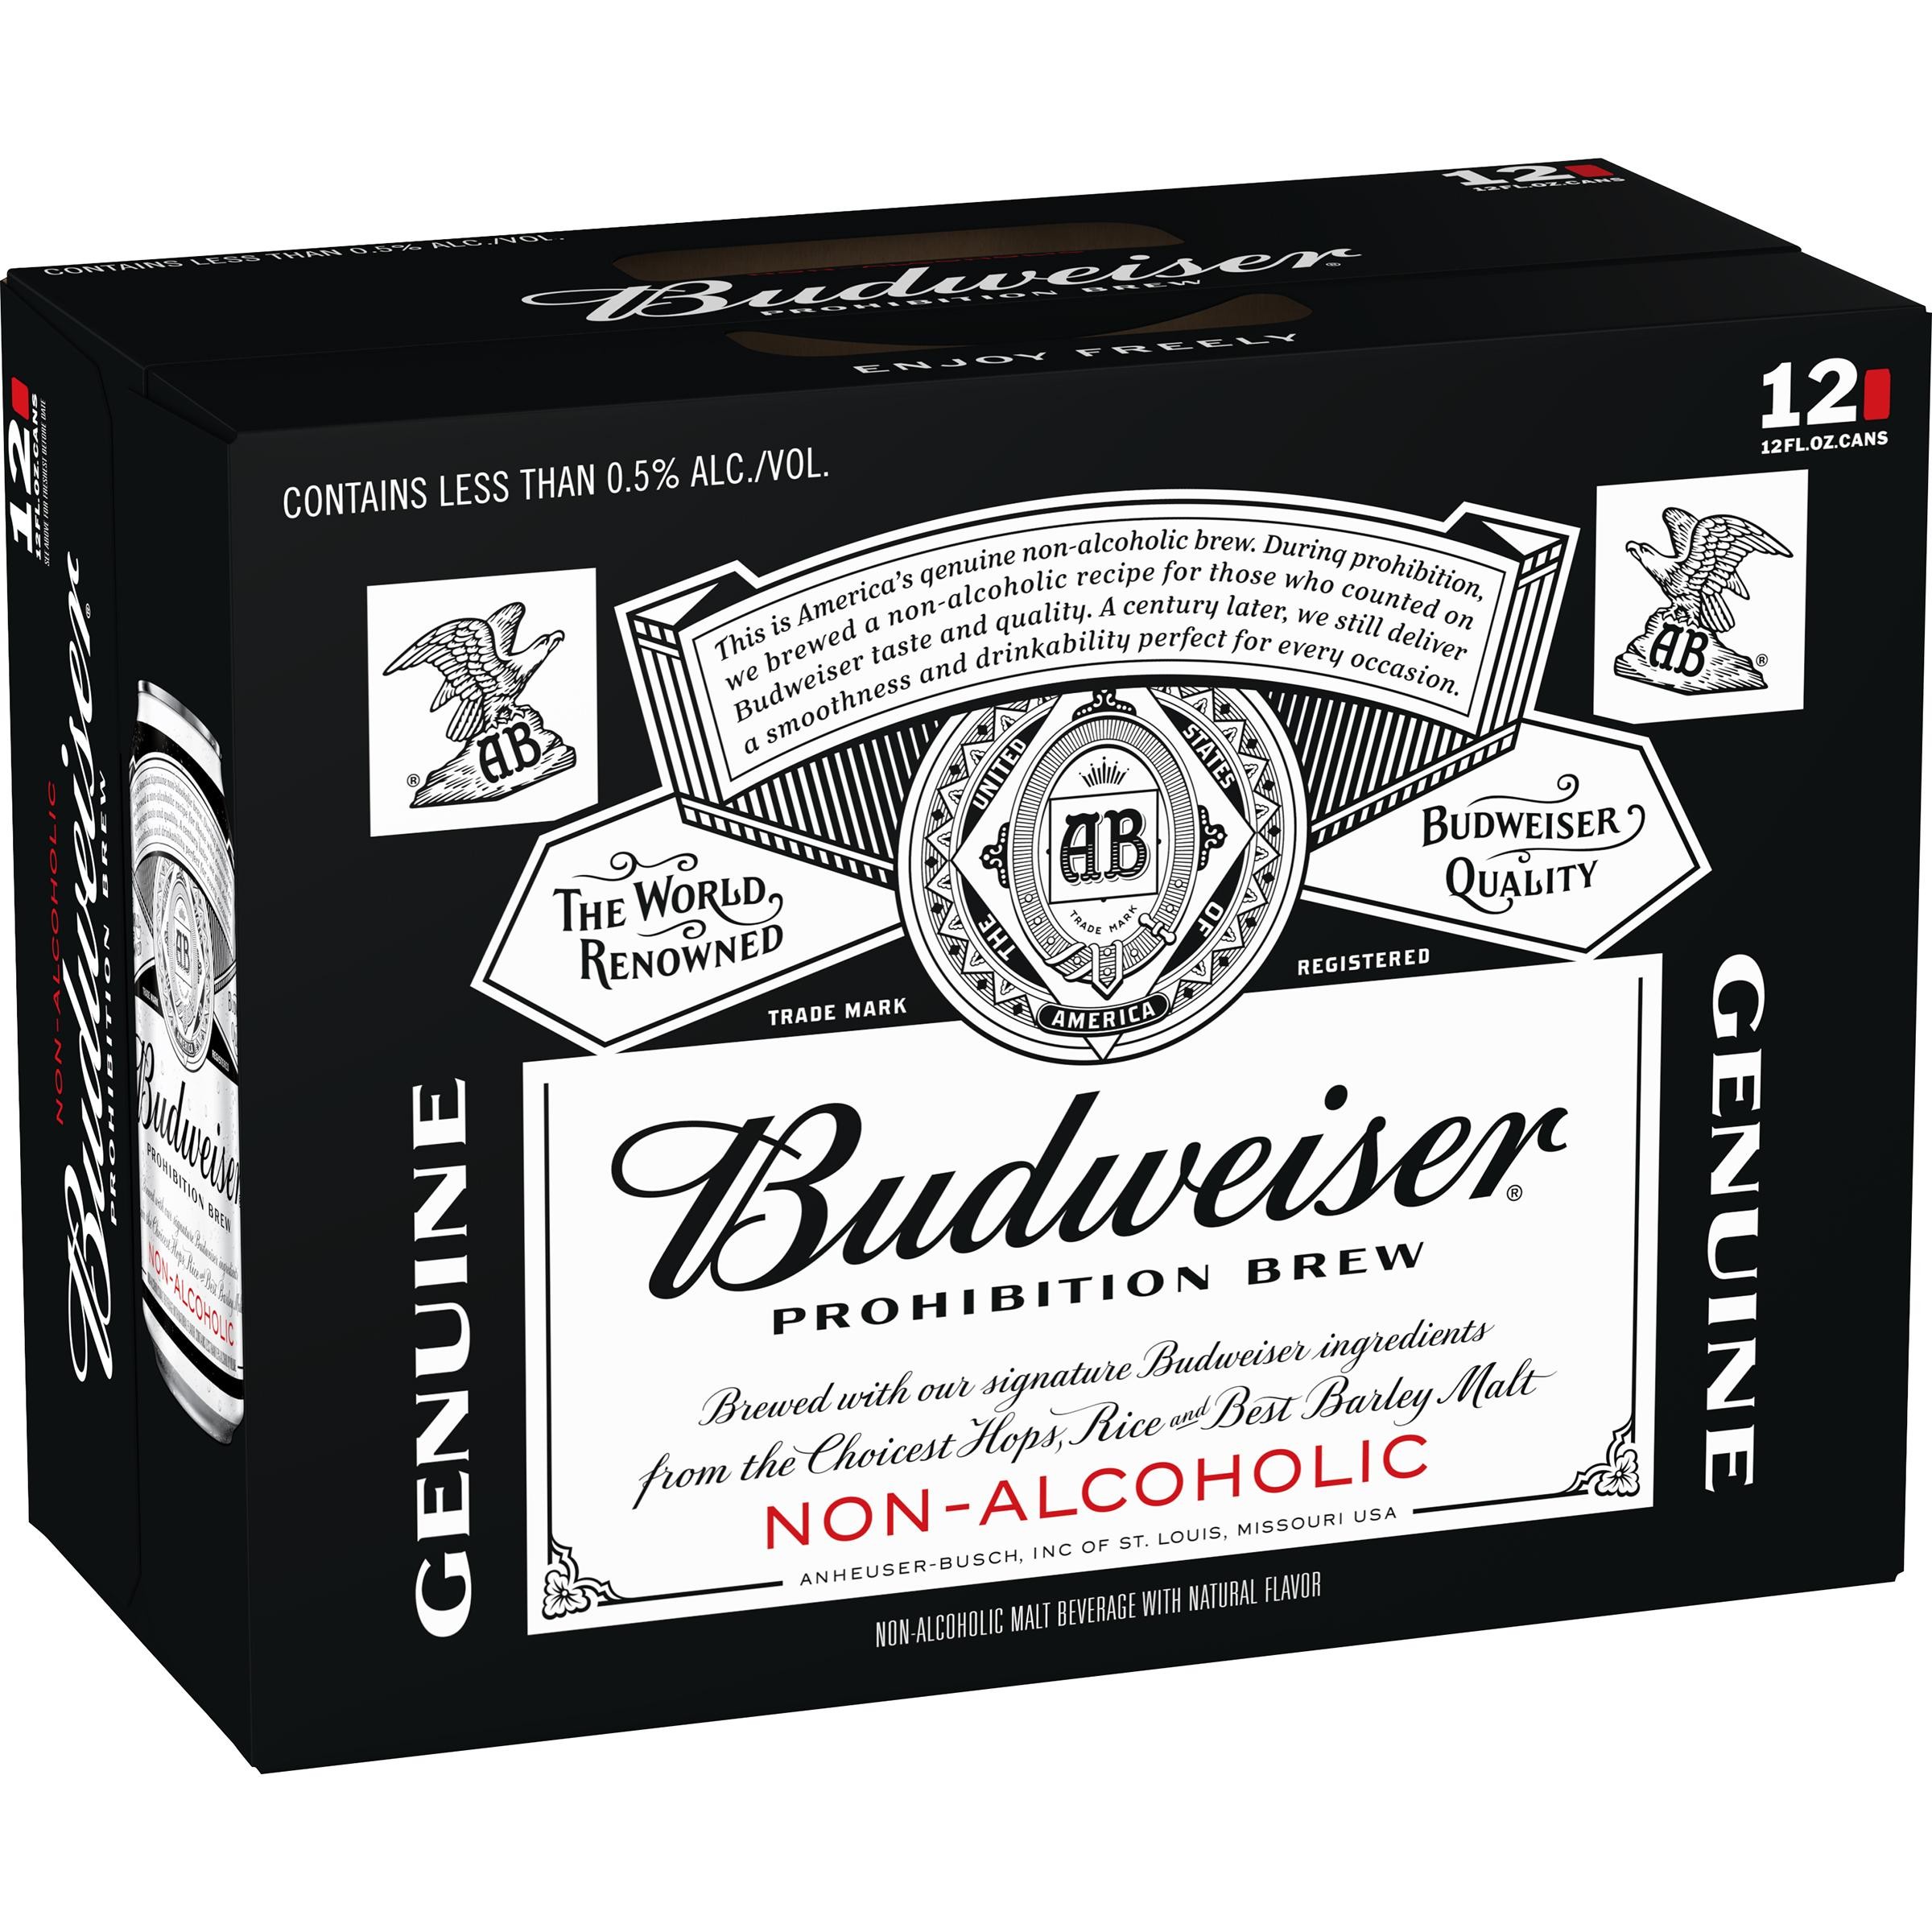 "Budweiser Zero Non-Alcoholic 12pk can